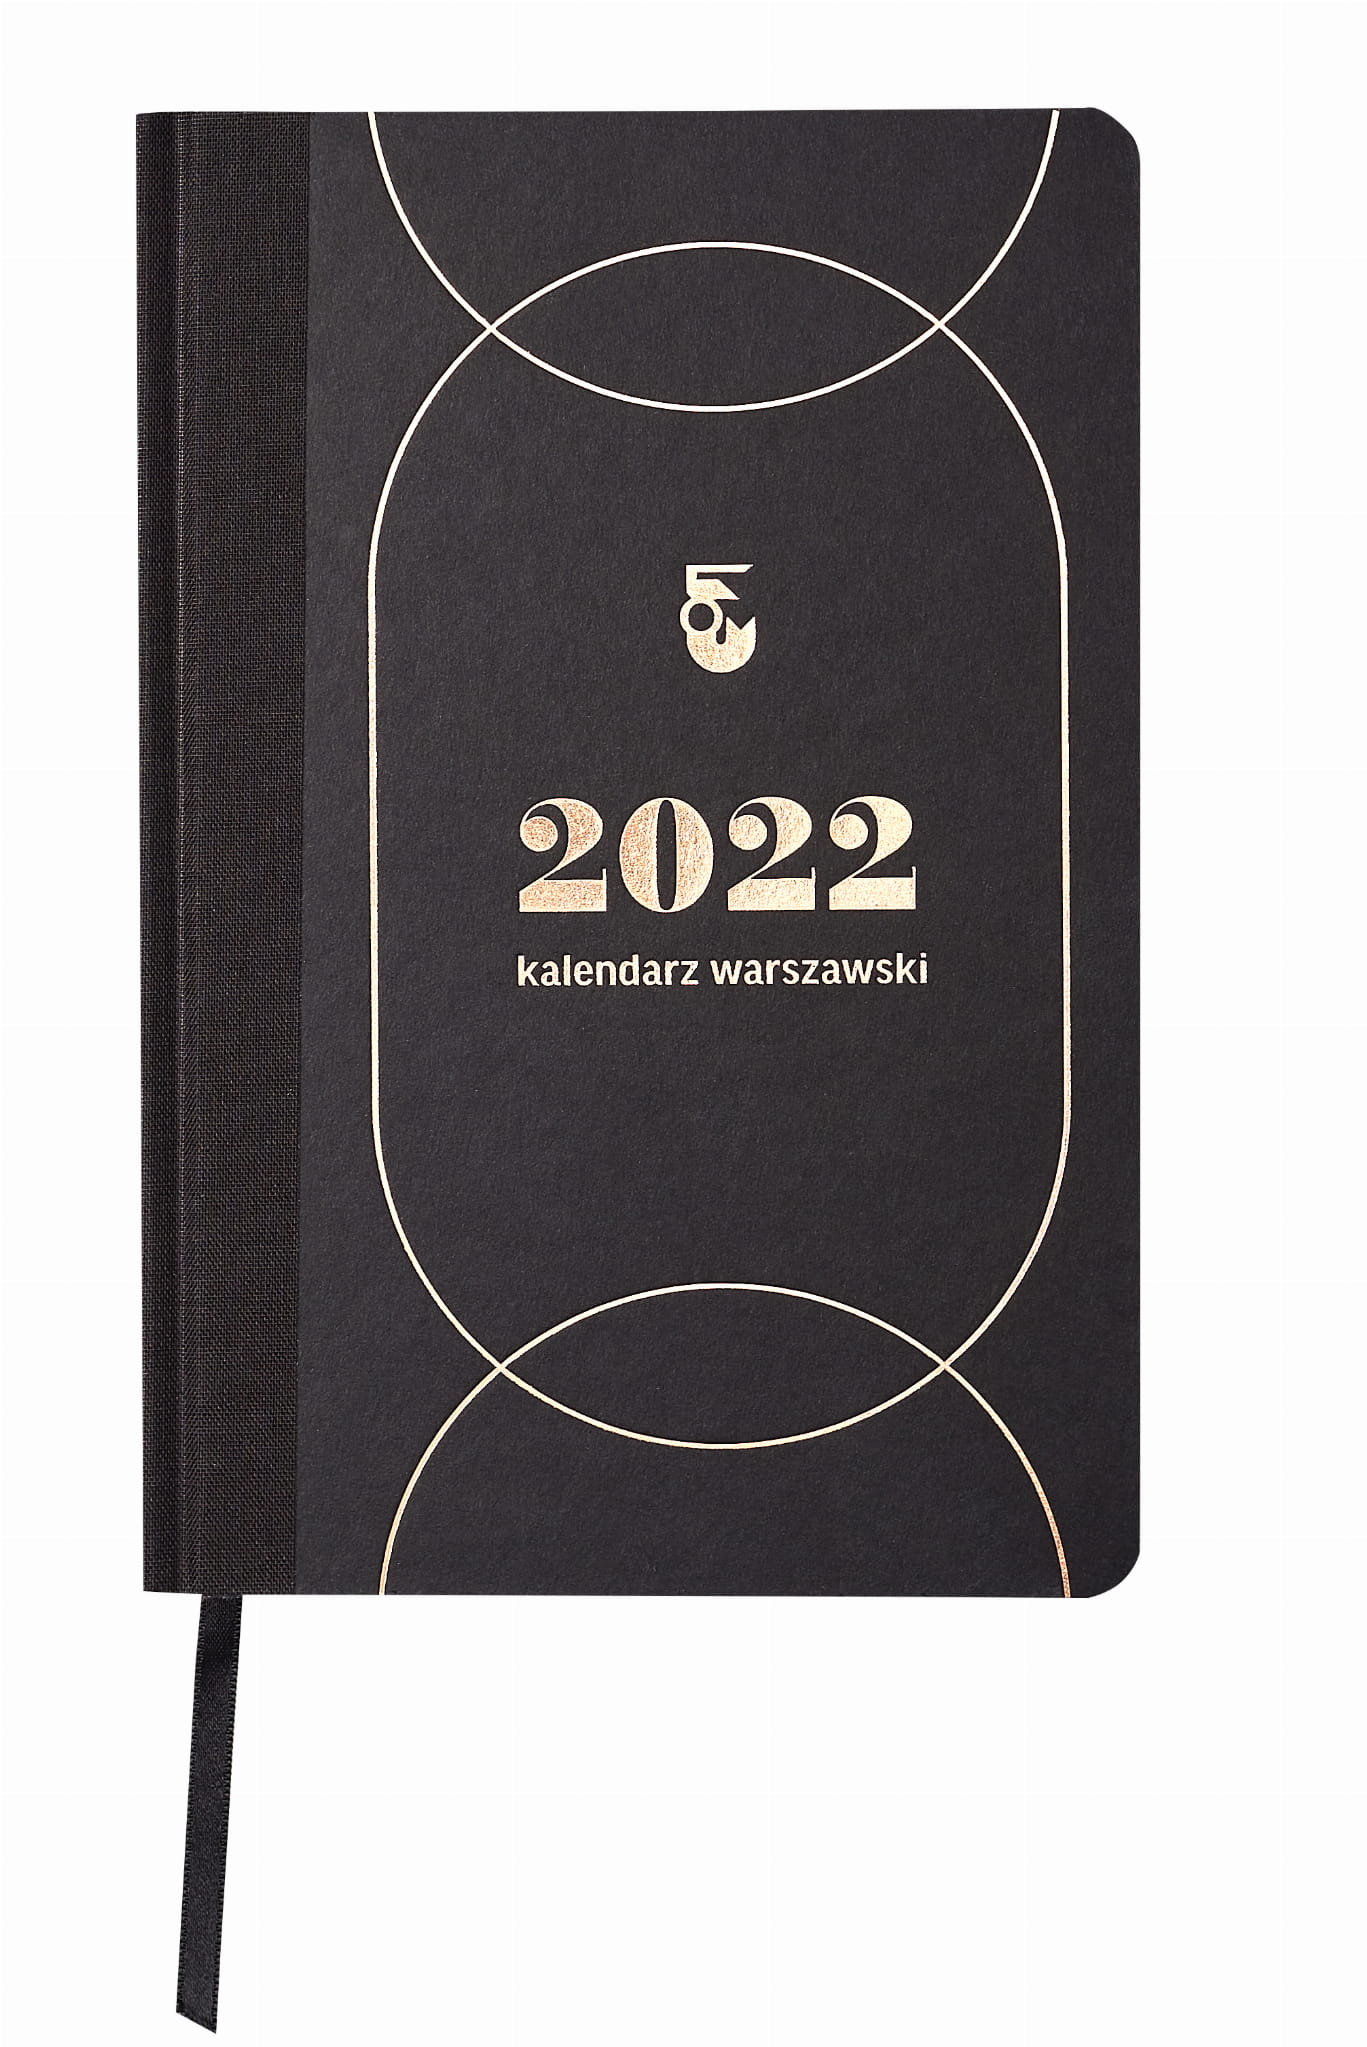 2022 kalendarz warszawski (opr.zbiorowe)